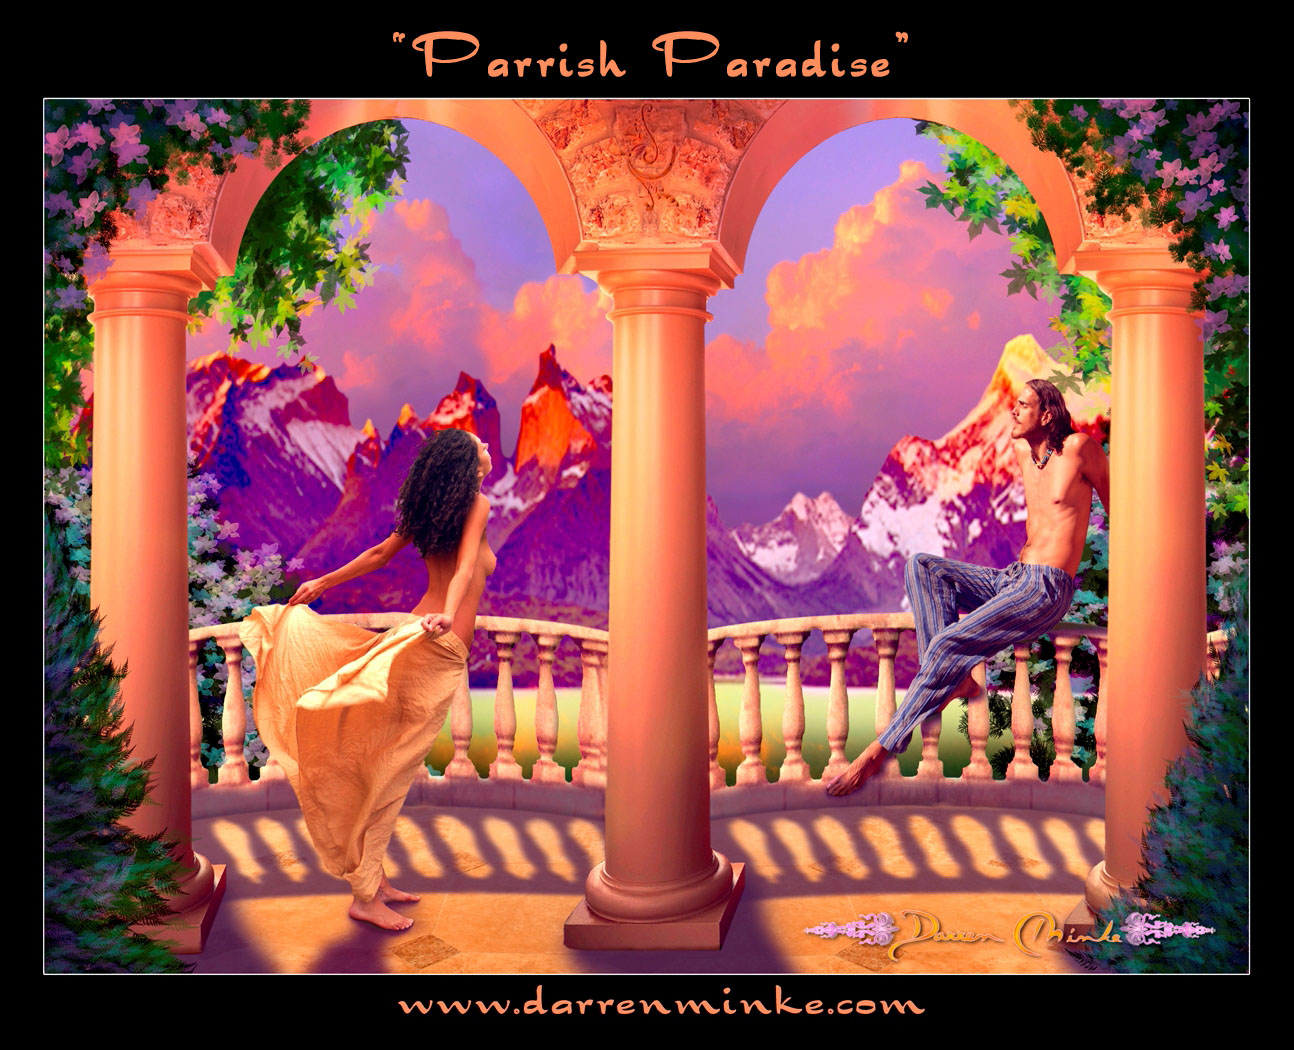 Parrish Paradise - Darren Minke